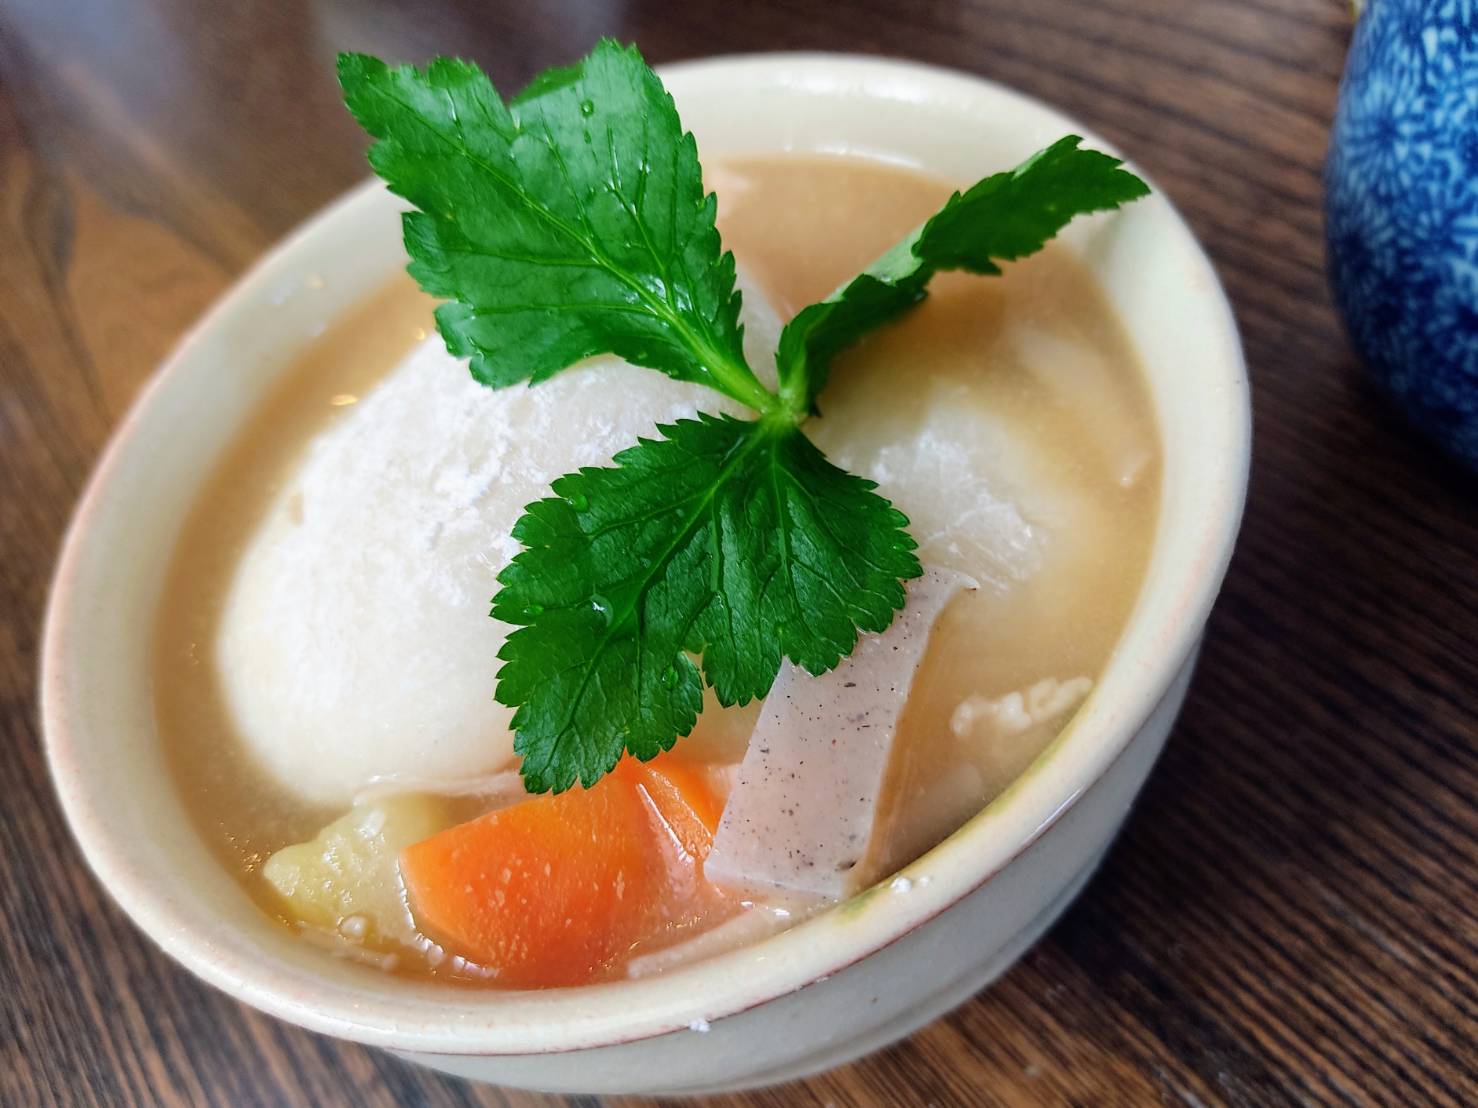 Osaka style ozoni soup with mochi and white miso